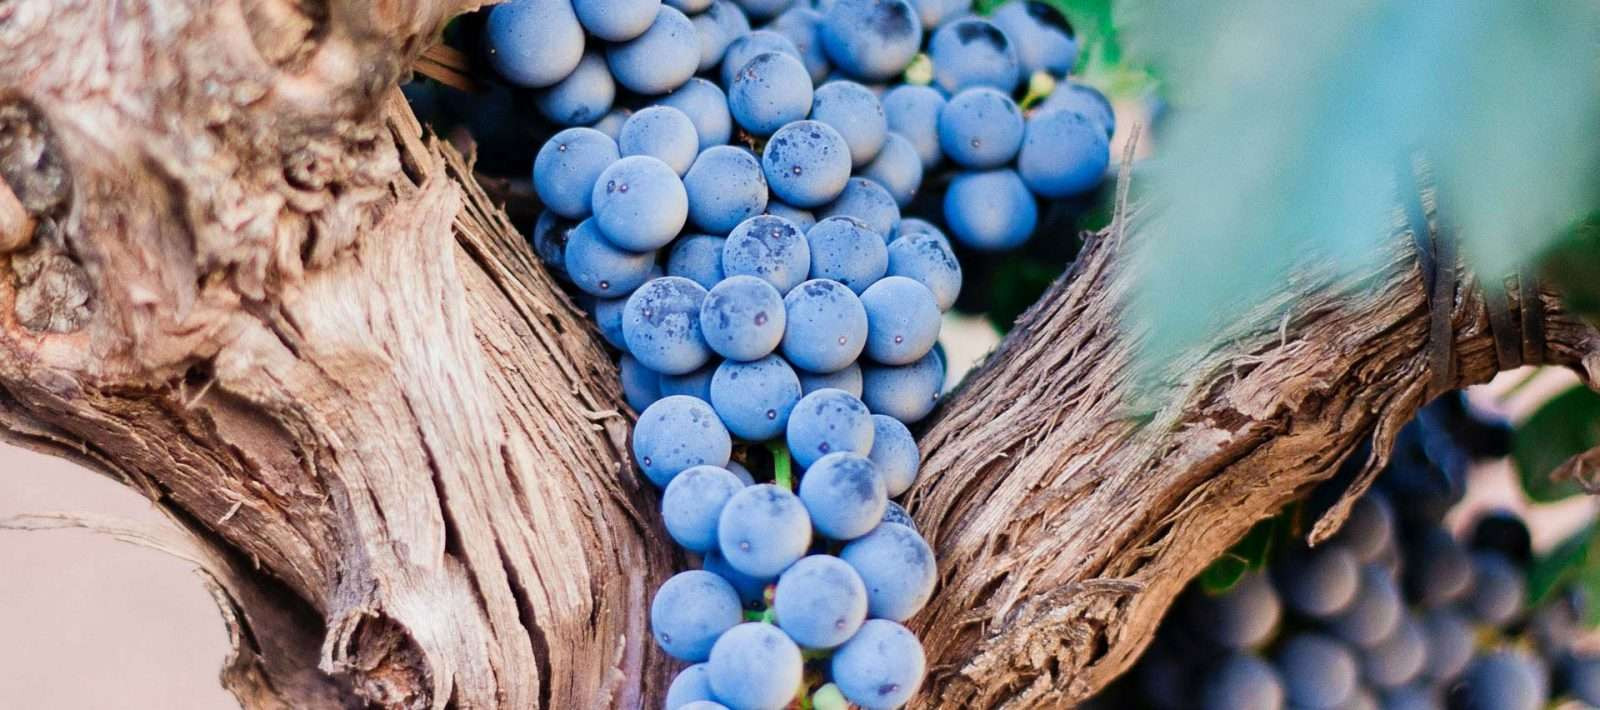 Dezvoltarea învățământului vitivinicol în liceele agricole din Moldova